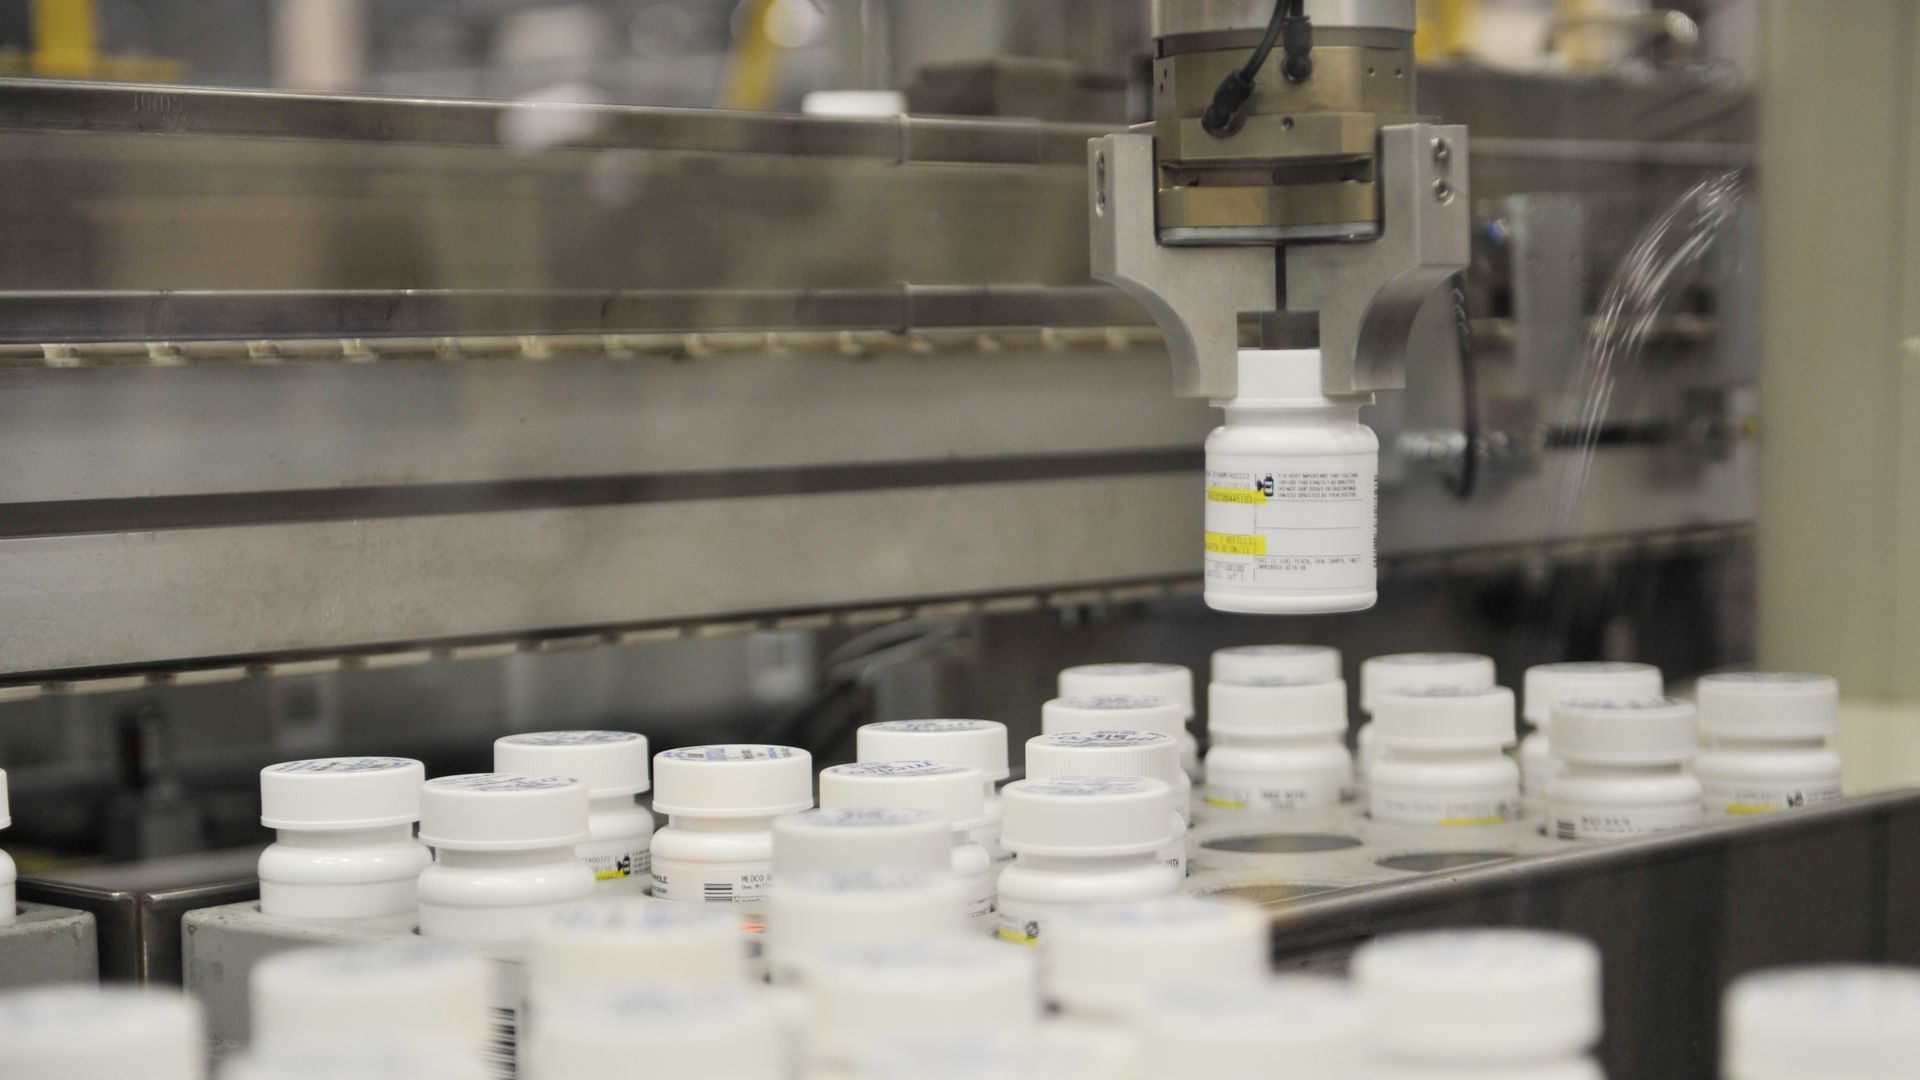 A robot arm picks up a bottle of pills.